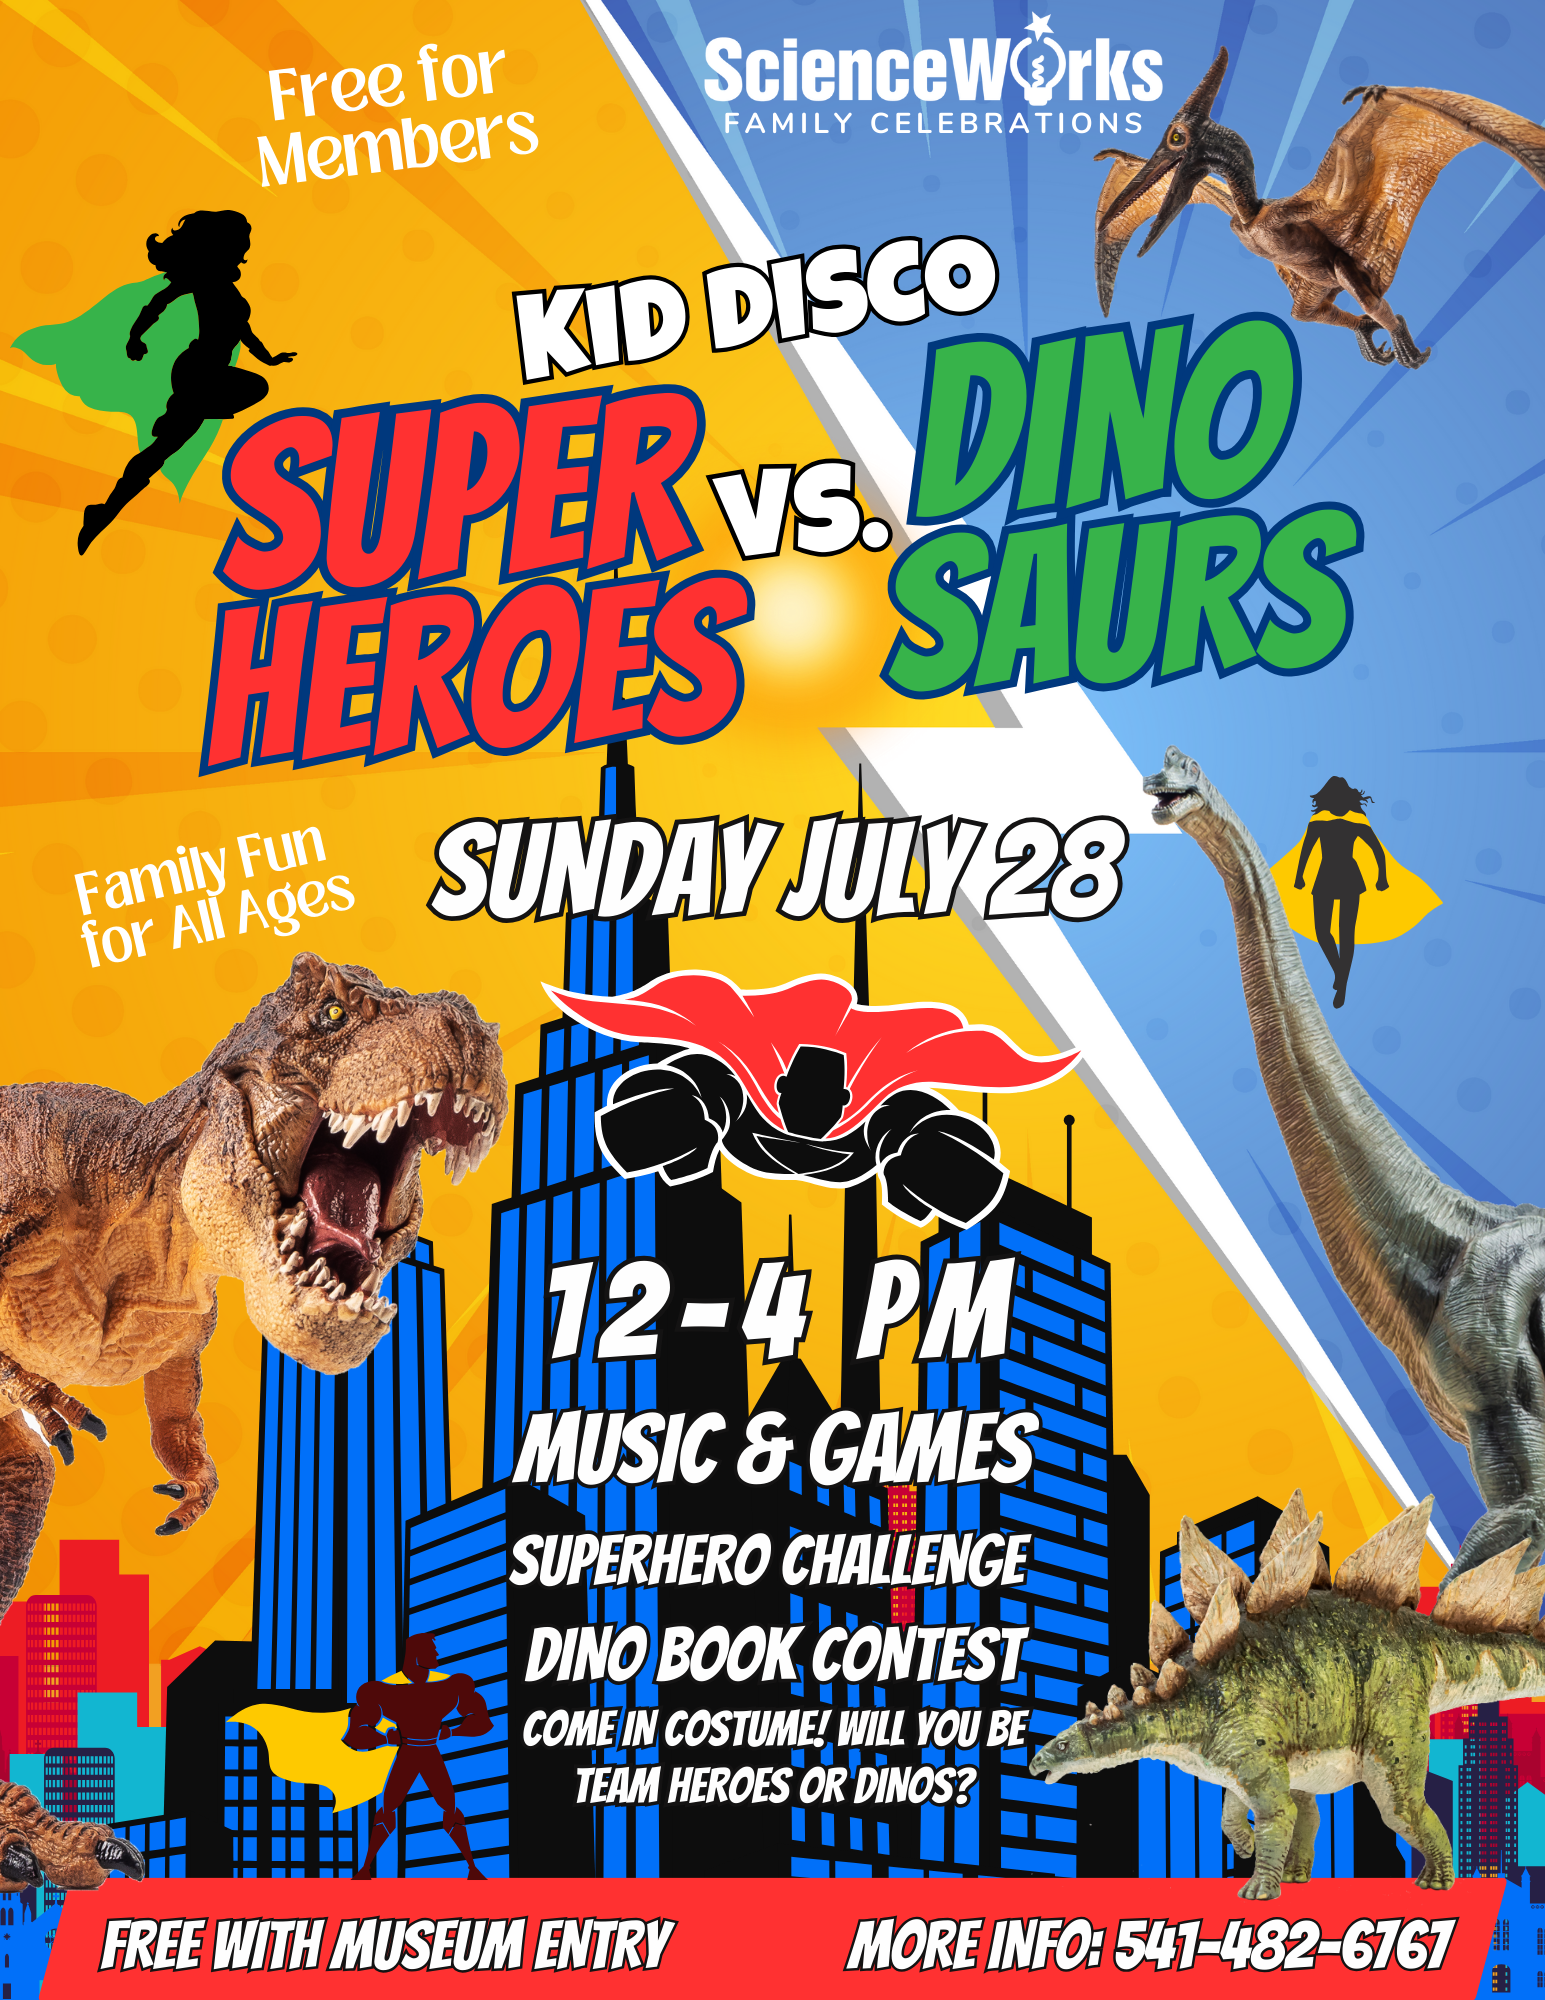 SuperHeroes vs Dinosaurs Family Party